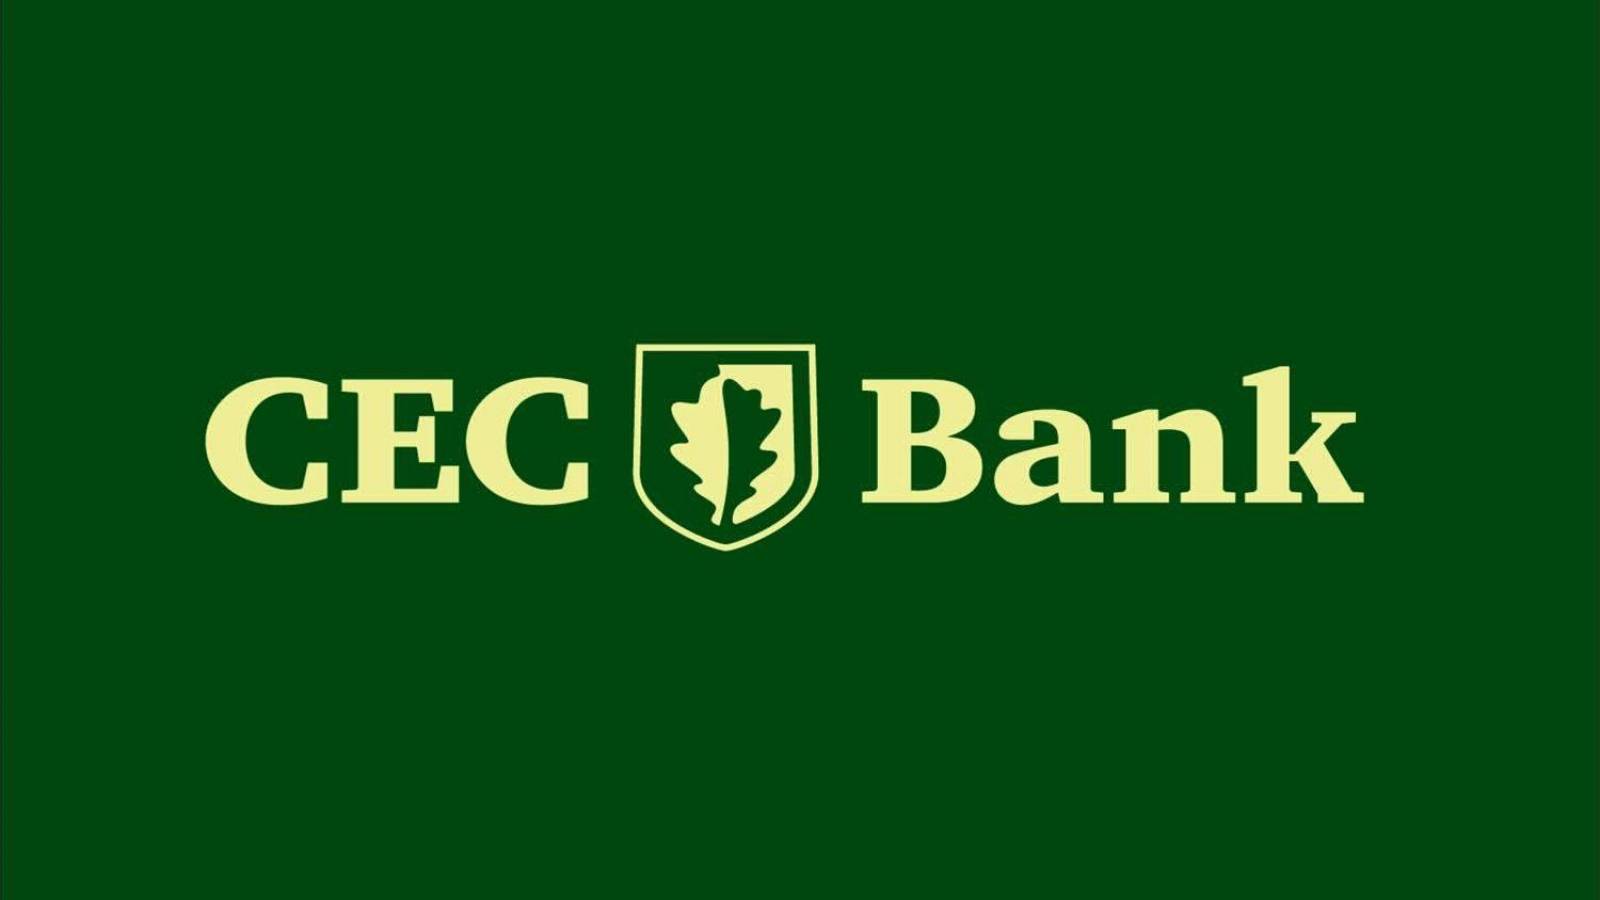 Vigilance de la Banque CEC